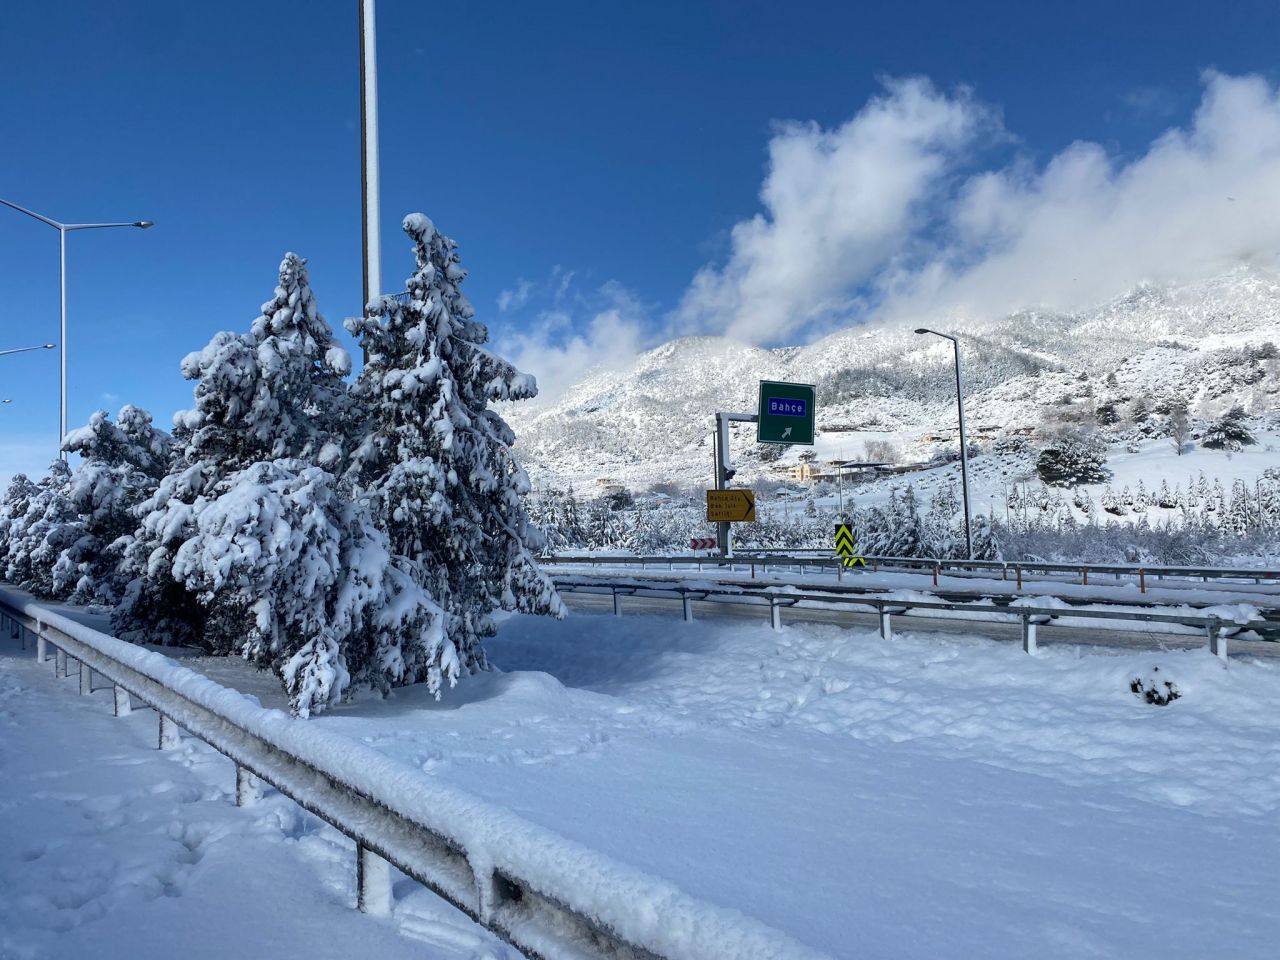 54 yıl sonra bu kadar kar yağdı, hayat felç oldu. İnsanlar mahsur kaldı, araçlar kara saplandı. İşte Gaziantep ve Nur Dağı'ndaki o kaosun fotoğrafları. Gaziantep Valisi Davut Gül'den flaş açıklama. - Sayfa:7